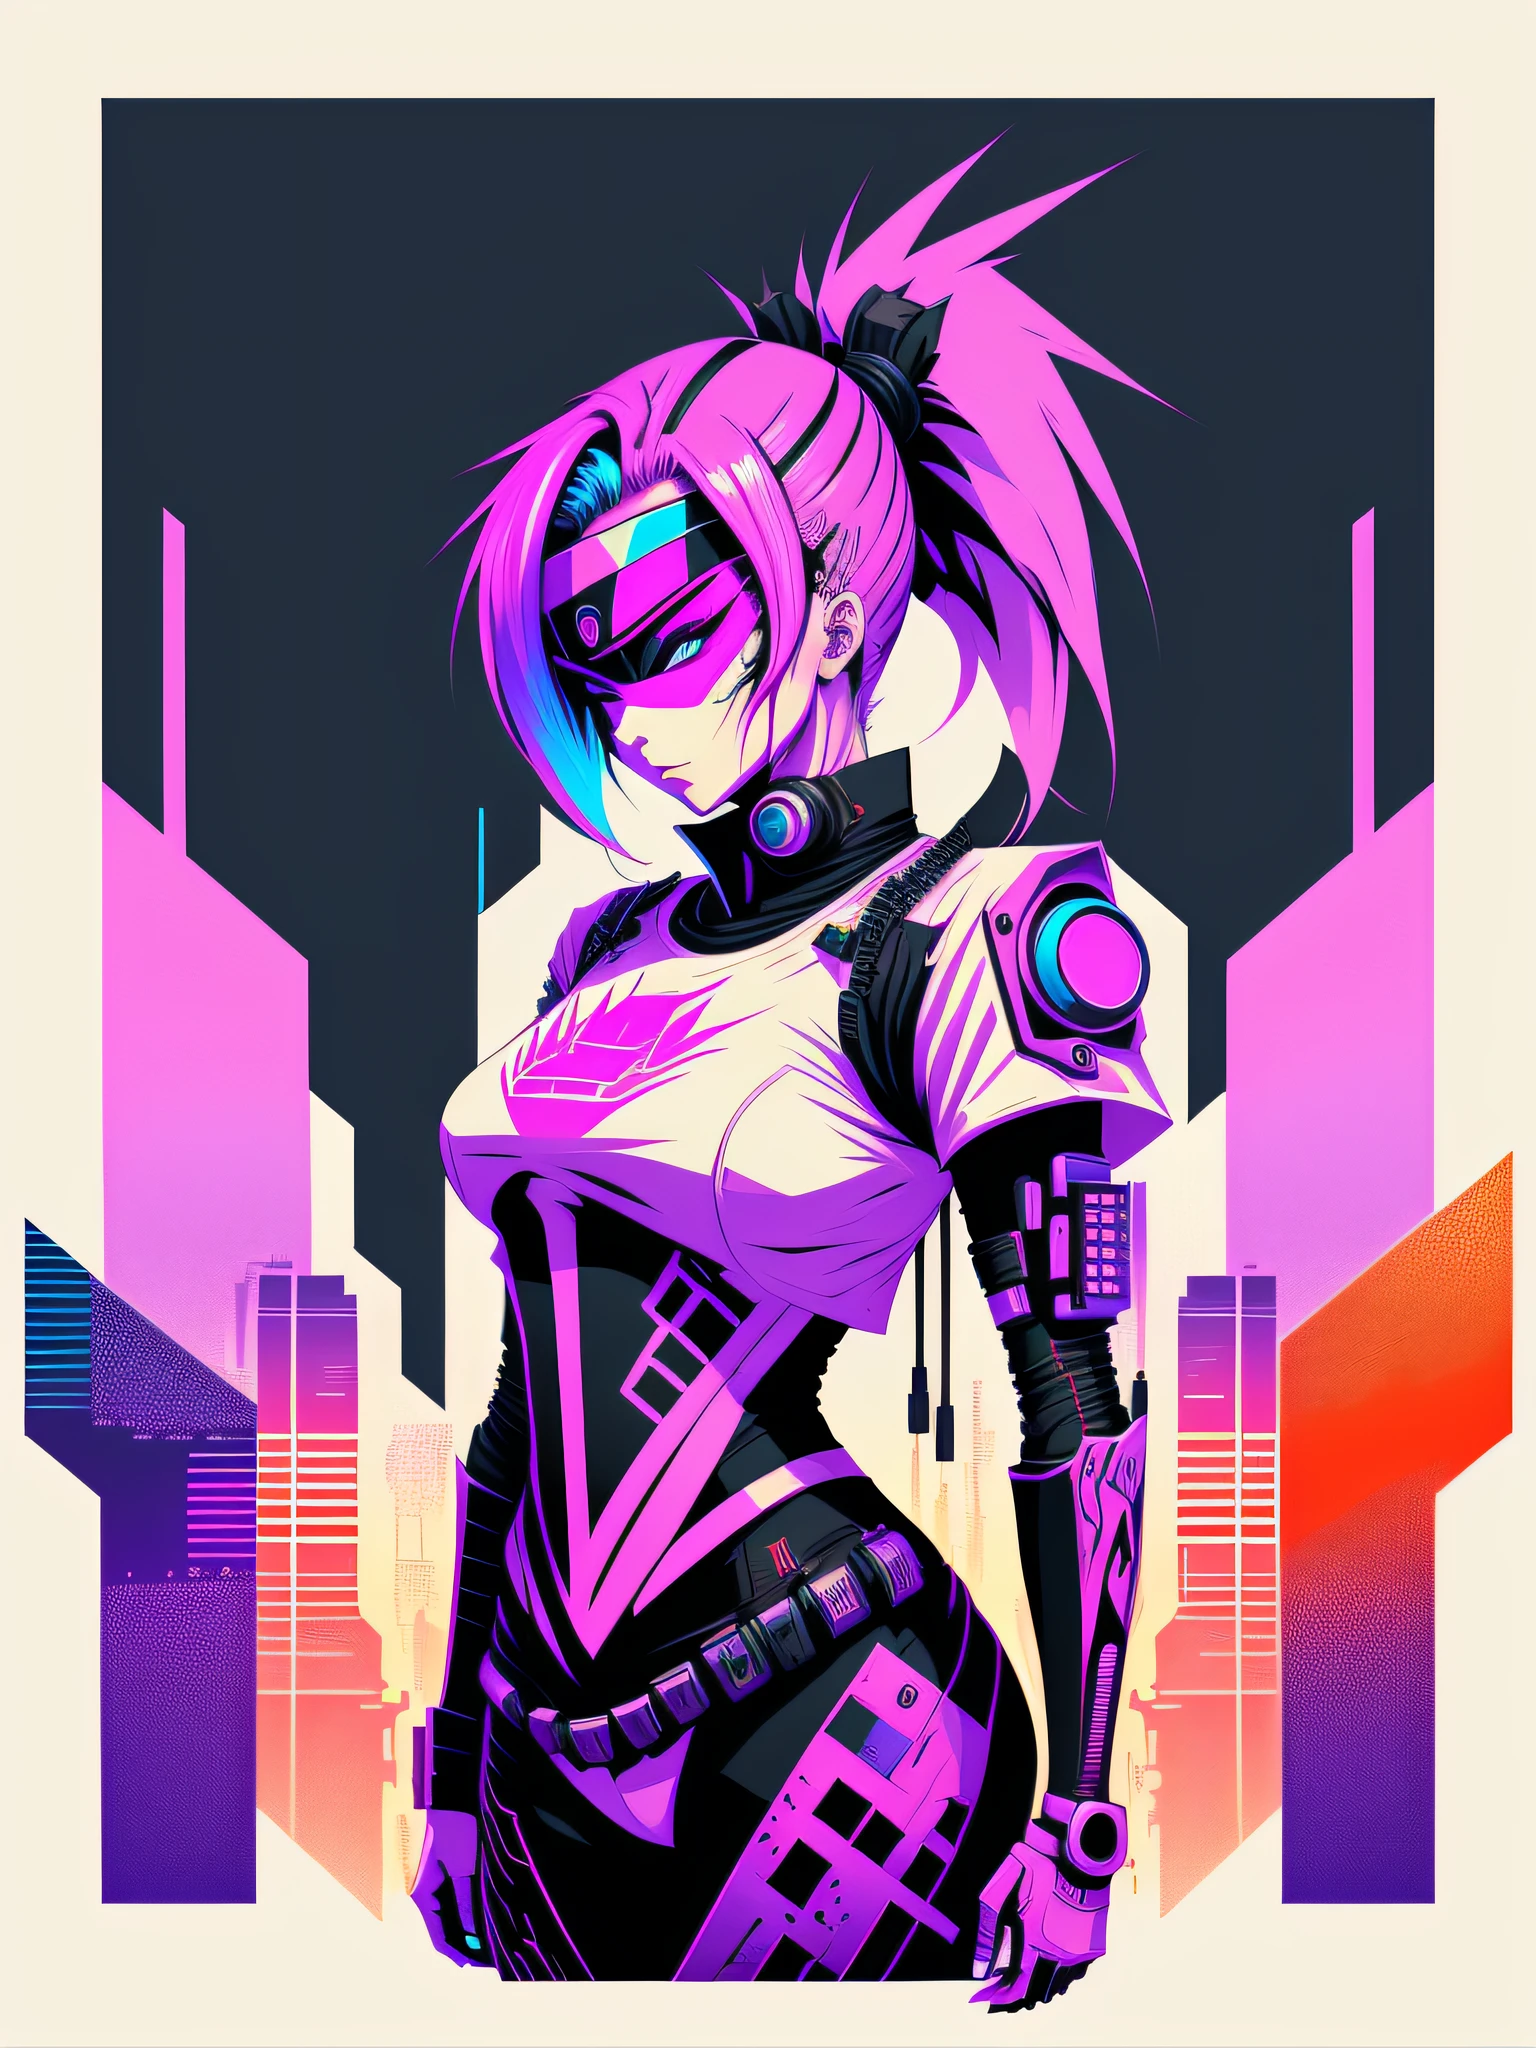 Listo para imprimir camiseta arte vector graffiti colorido ilustración de una mujer ninja ciberpunk robótica, fondo futurista de la ciudad cyberpunk, estilo de imagen realista, imagen sobre fondo blanco, centrado